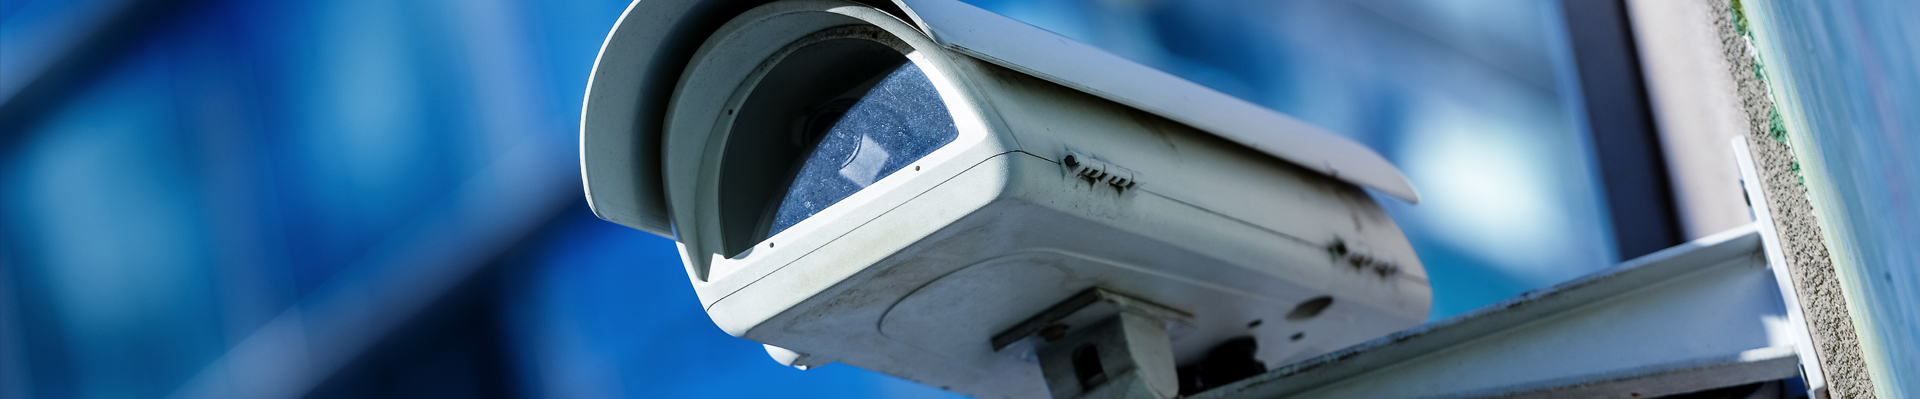 CCTV installations & Maintenance